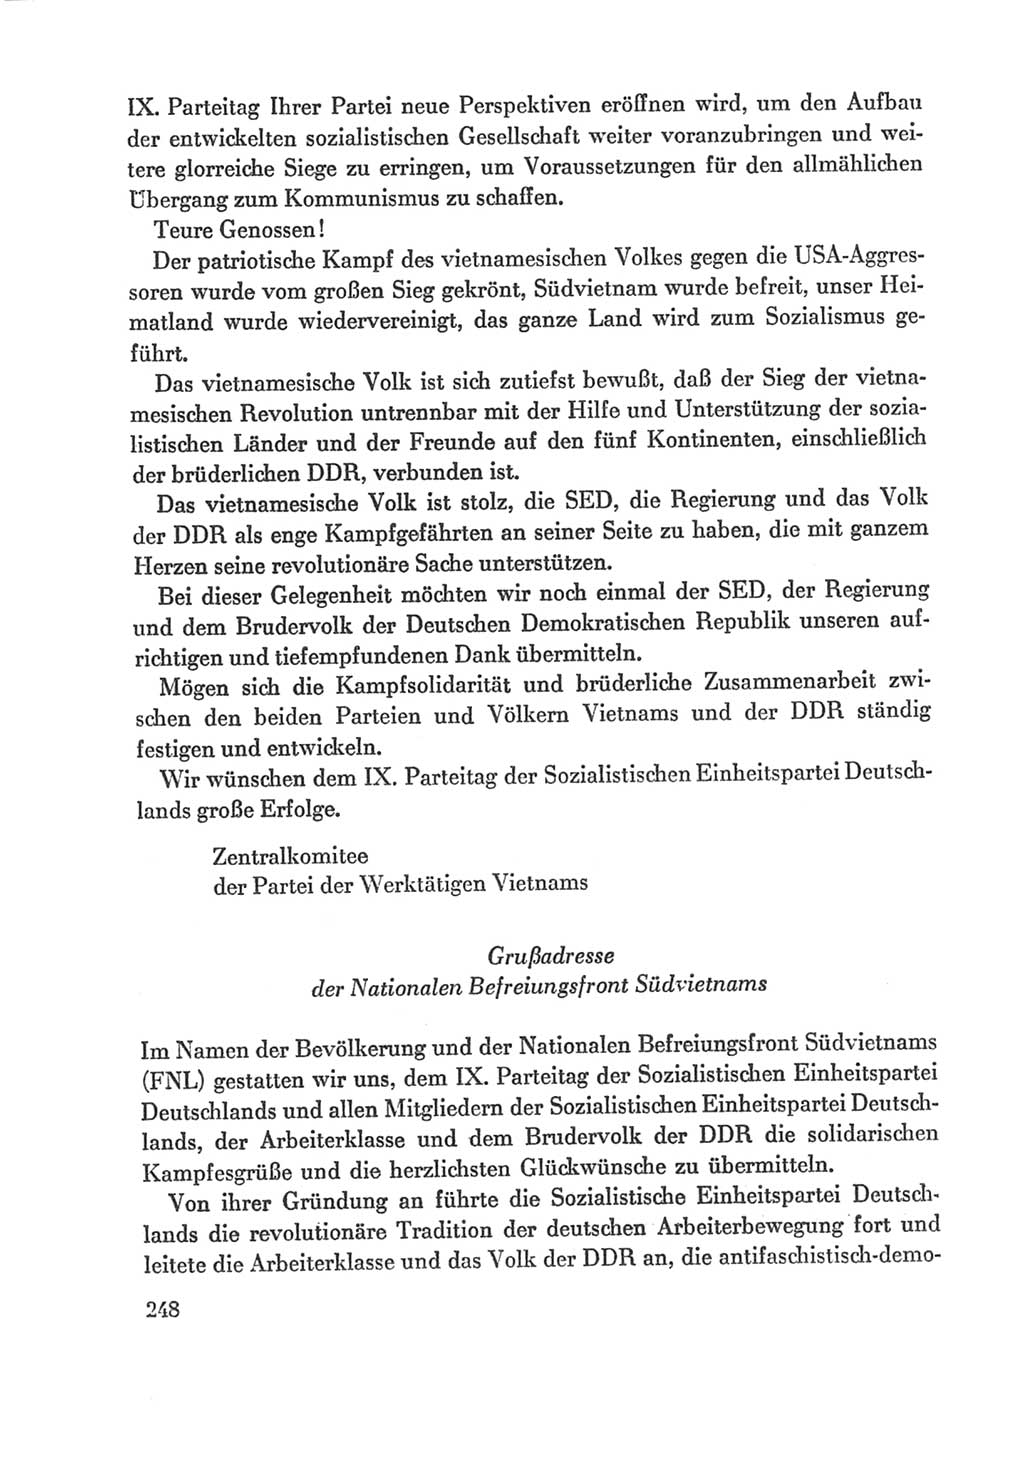 Protokoll der Verhandlungen des Ⅸ. Parteitages der Sozialistischen Einheitspartei Deutschlands (SED) [Deutsche Demokratische Republik (DDR)] 1976, Band 1, Seite 248 (Prot. Verh. Ⅸ. PT SED DDR 1976, Bd. 1, S. 248)